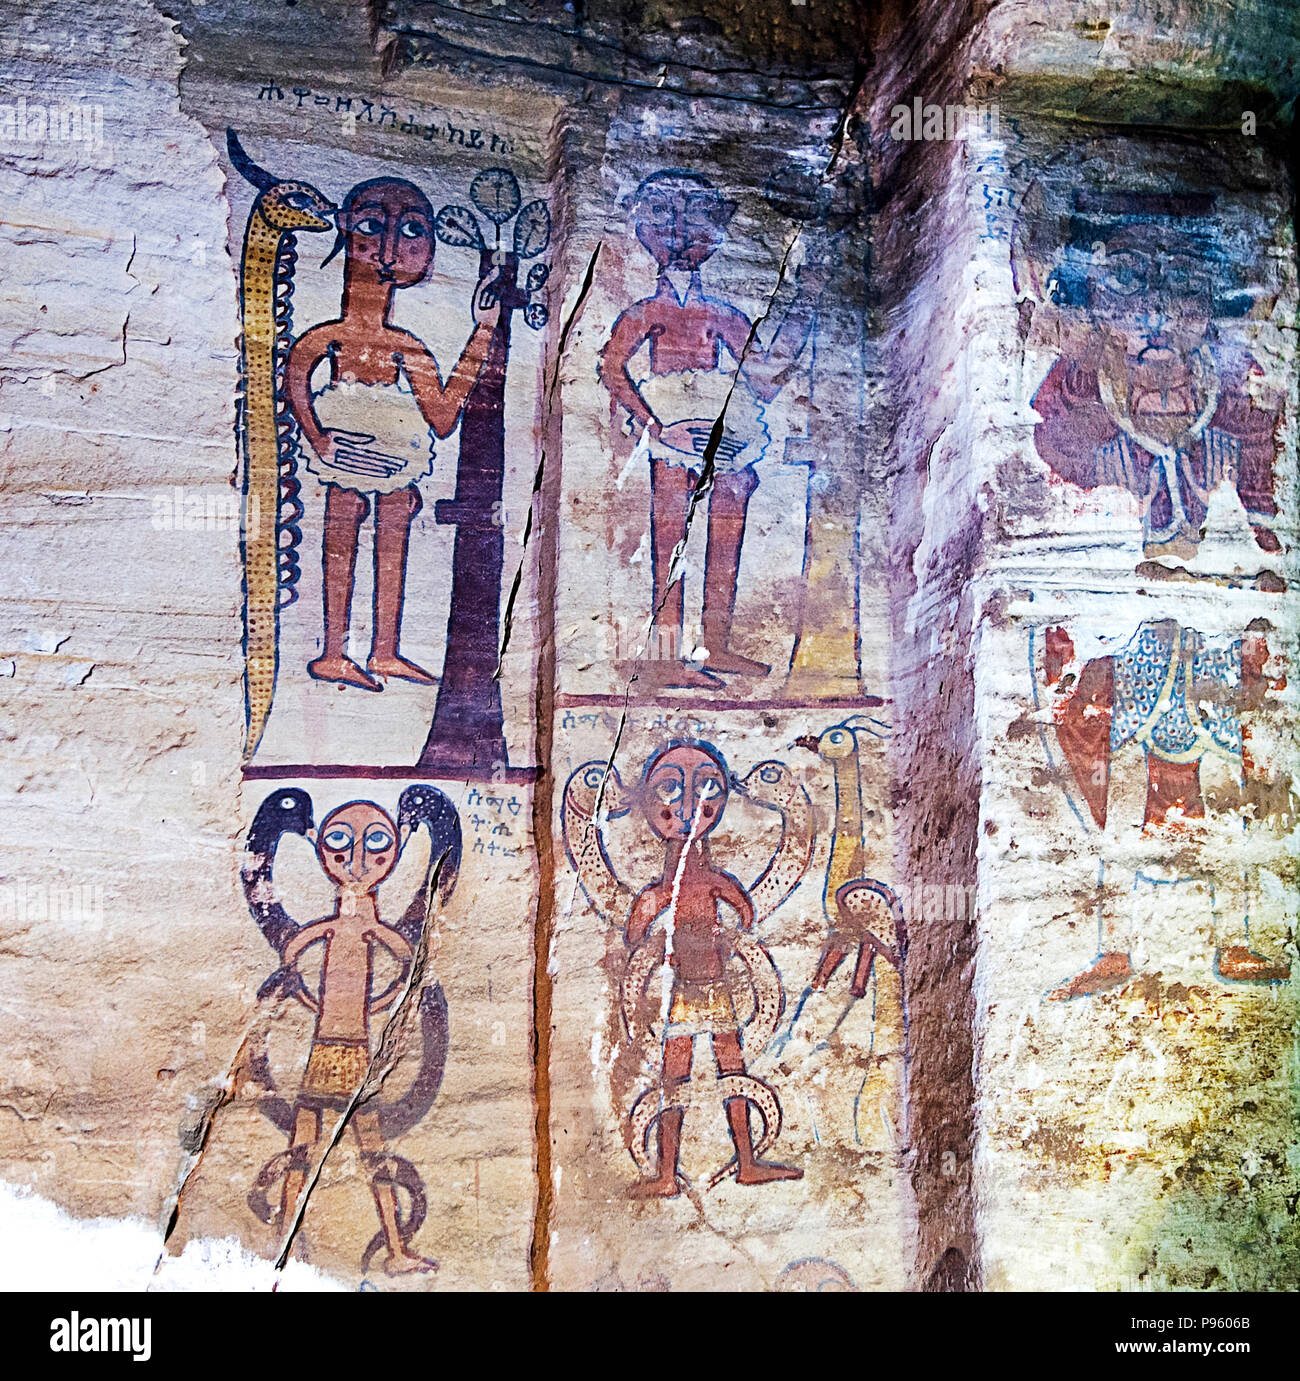 La chute de l'homme, la fresque dans l'intérieur de l'église de roche Debre Maryam Qorqor, Gheralta, Tigray, Éthiopie Banque D'Images